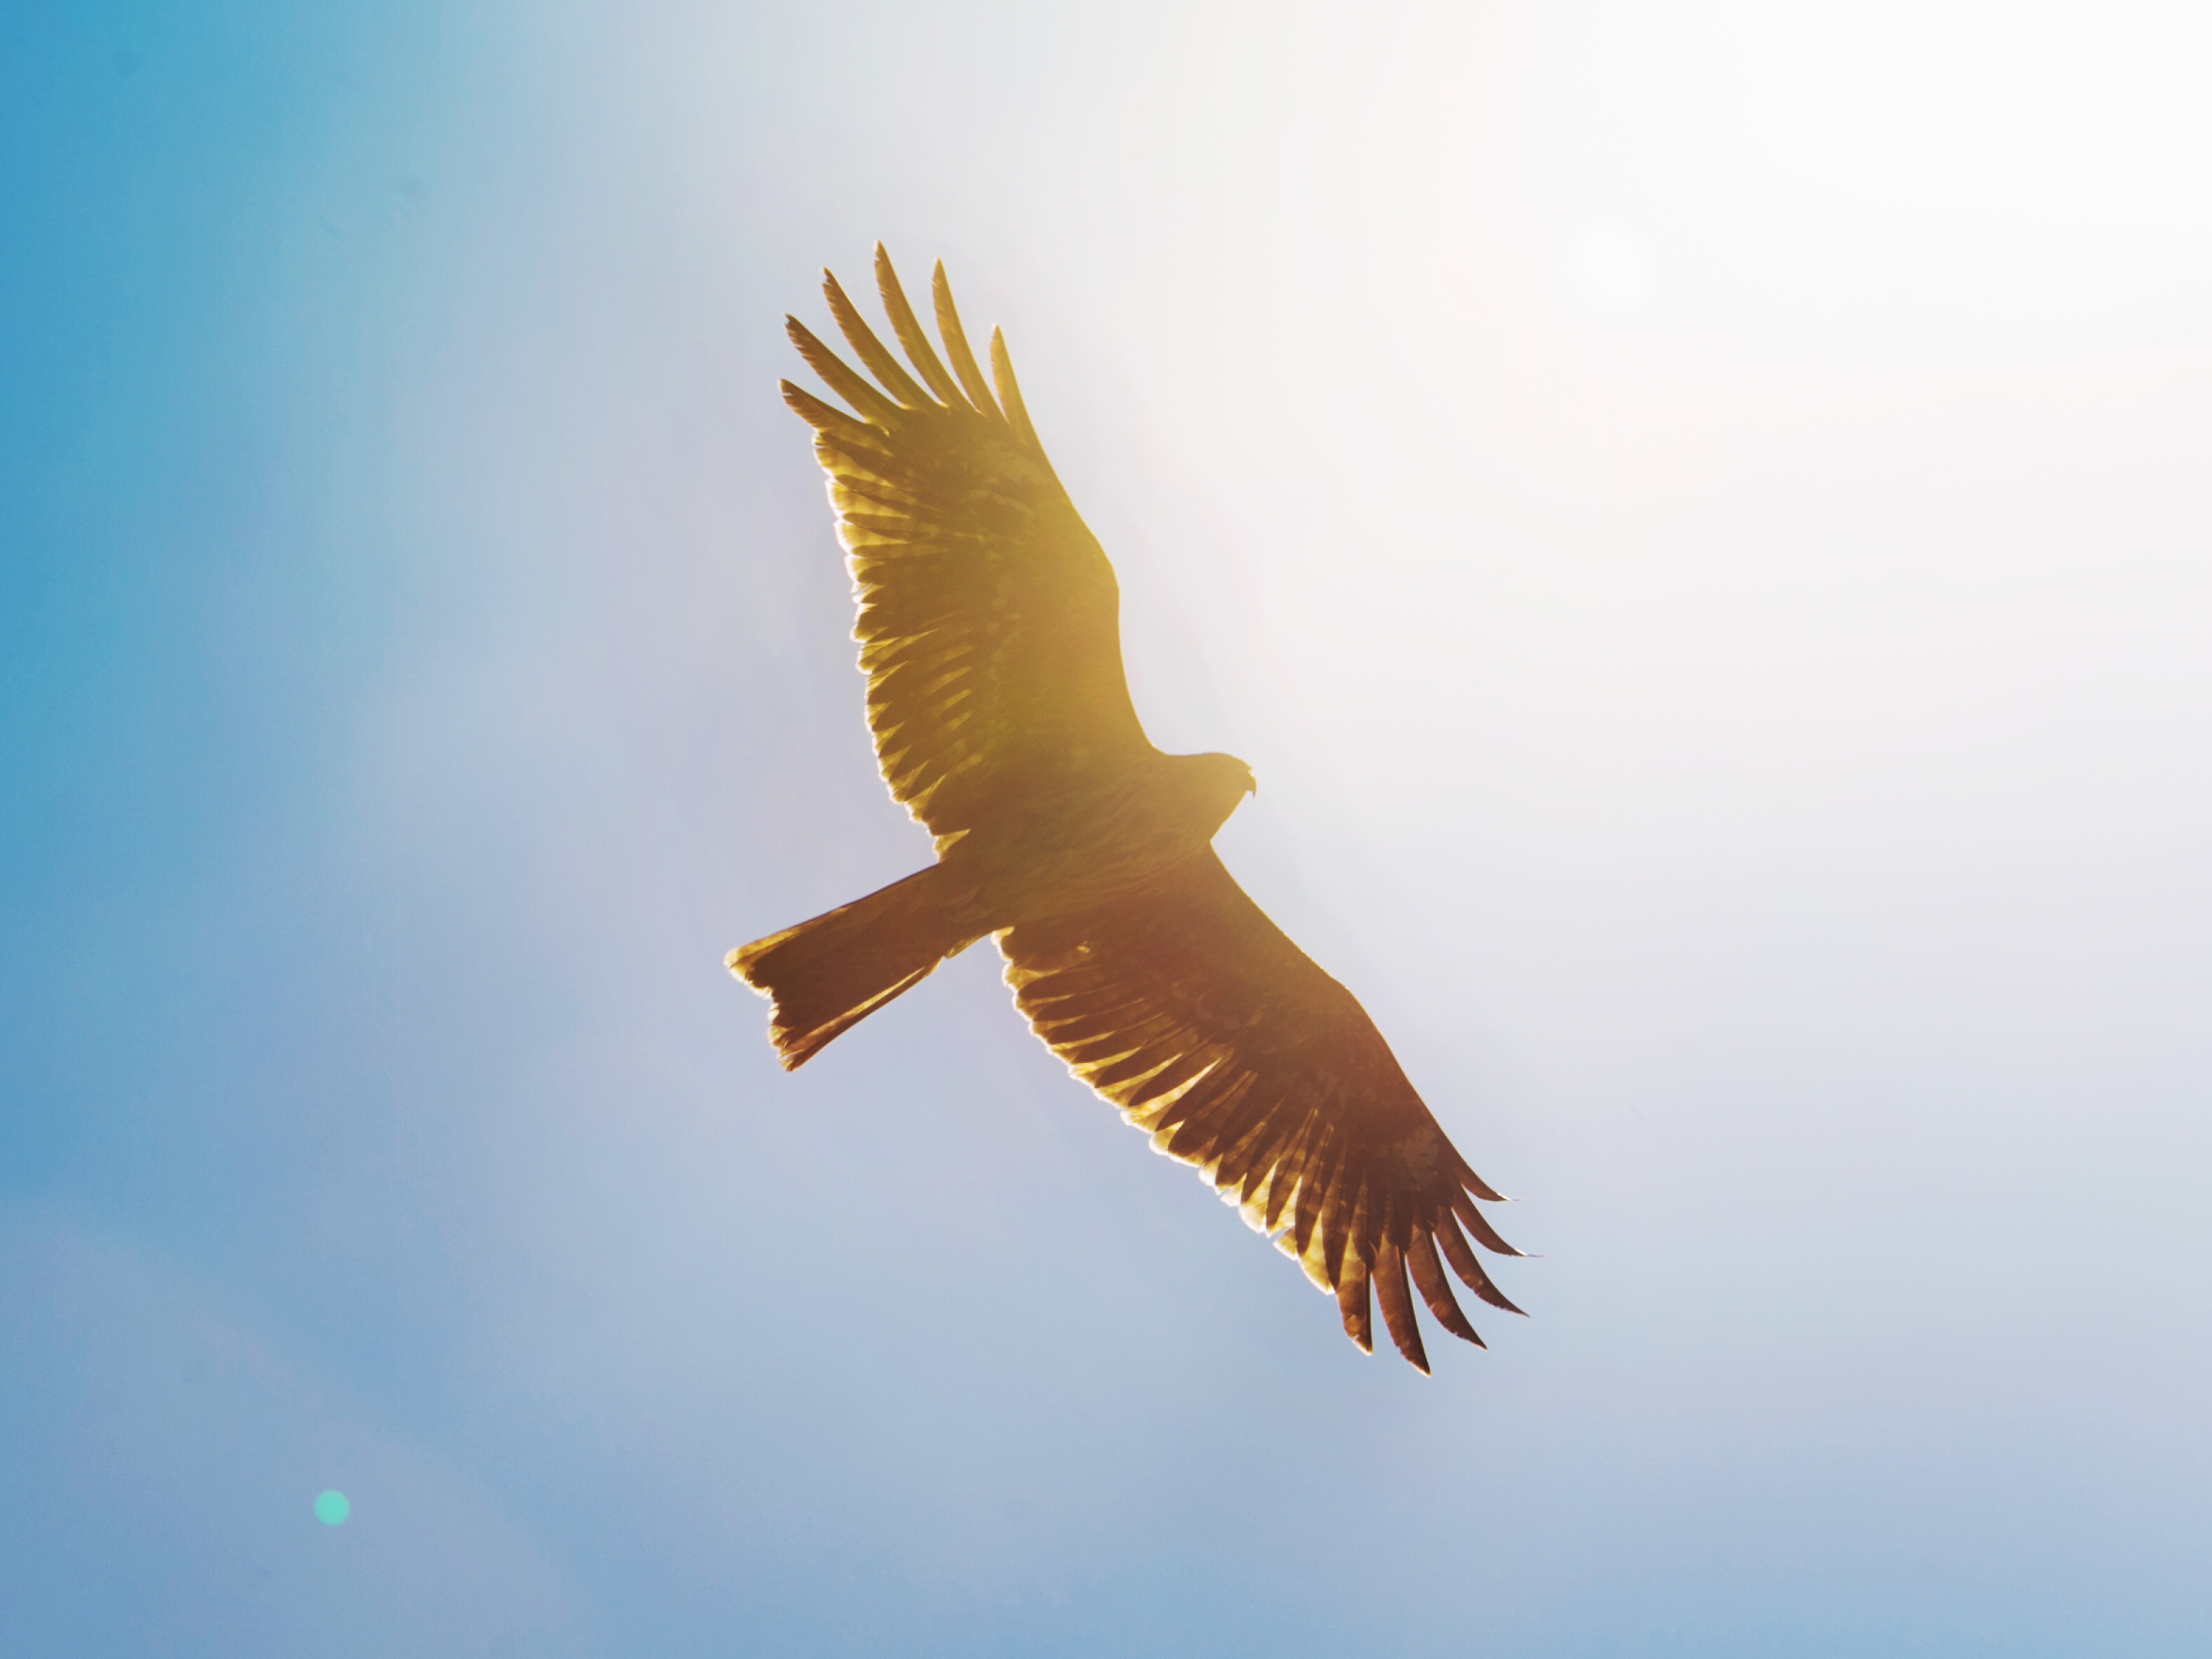 Hawk flying through the sky